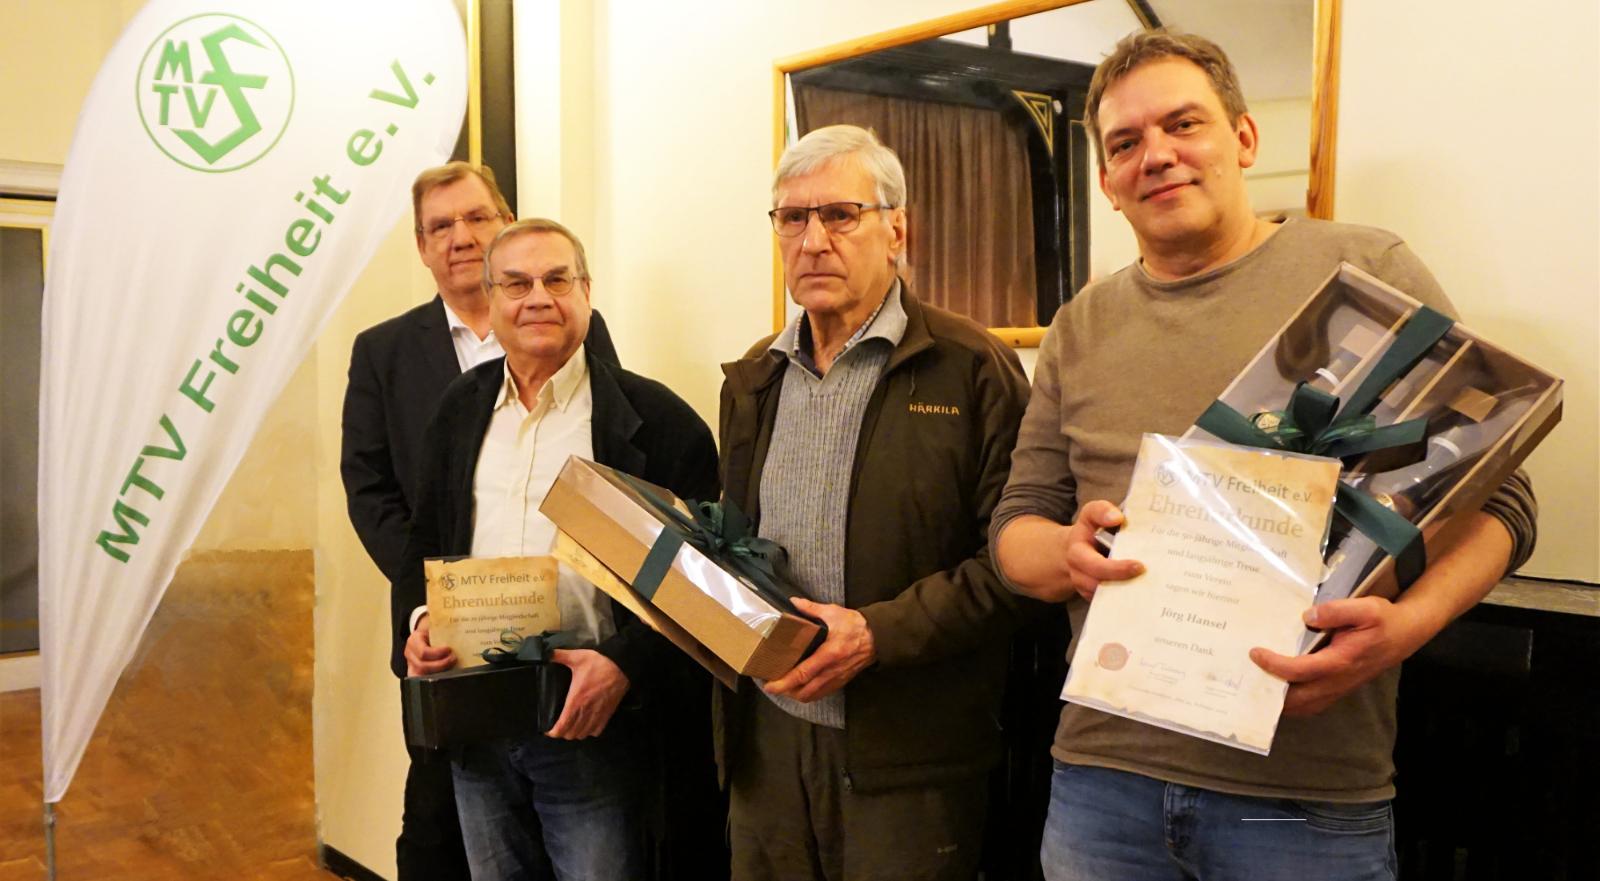 Die anwesenden Geehrten mit dem 1. Vorsitzenden: vlnr. Bernd Tödteberg, Dieter Kurschat, Bernd Patzer, Jörg Hansel